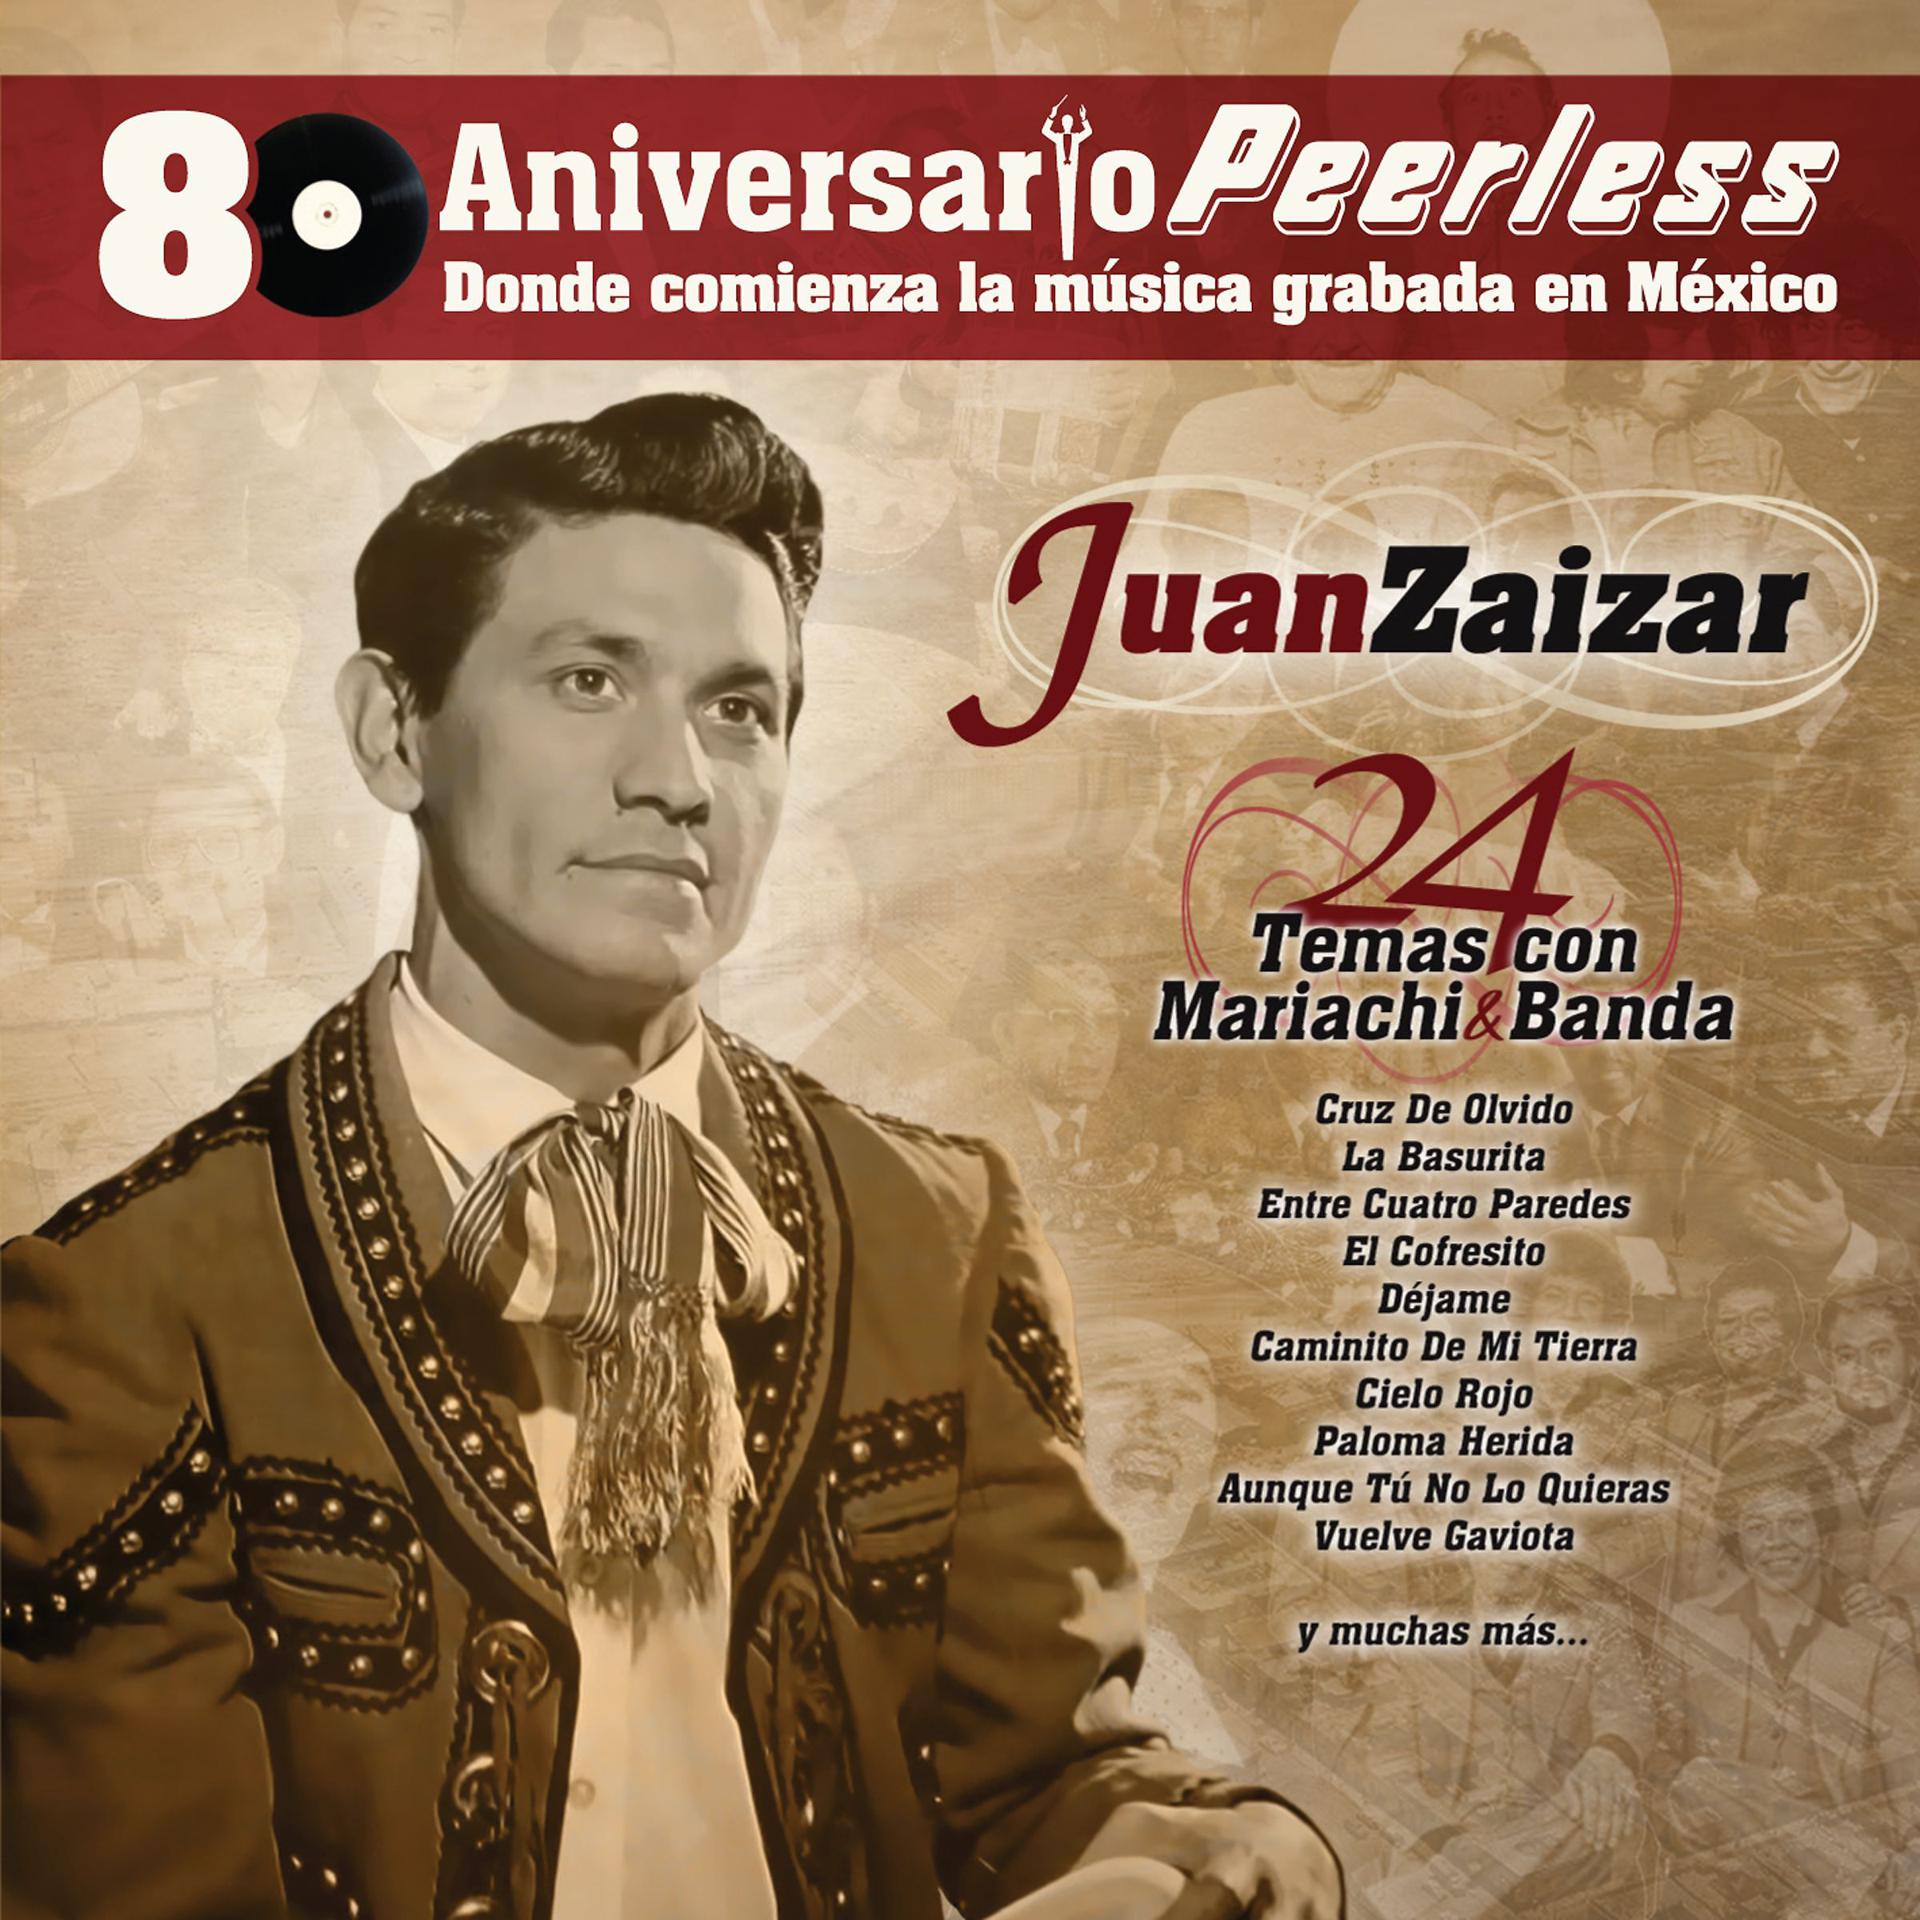 Постер альбома Peerless 80 Aniversario - 24 Temas con Mariachi y Banda